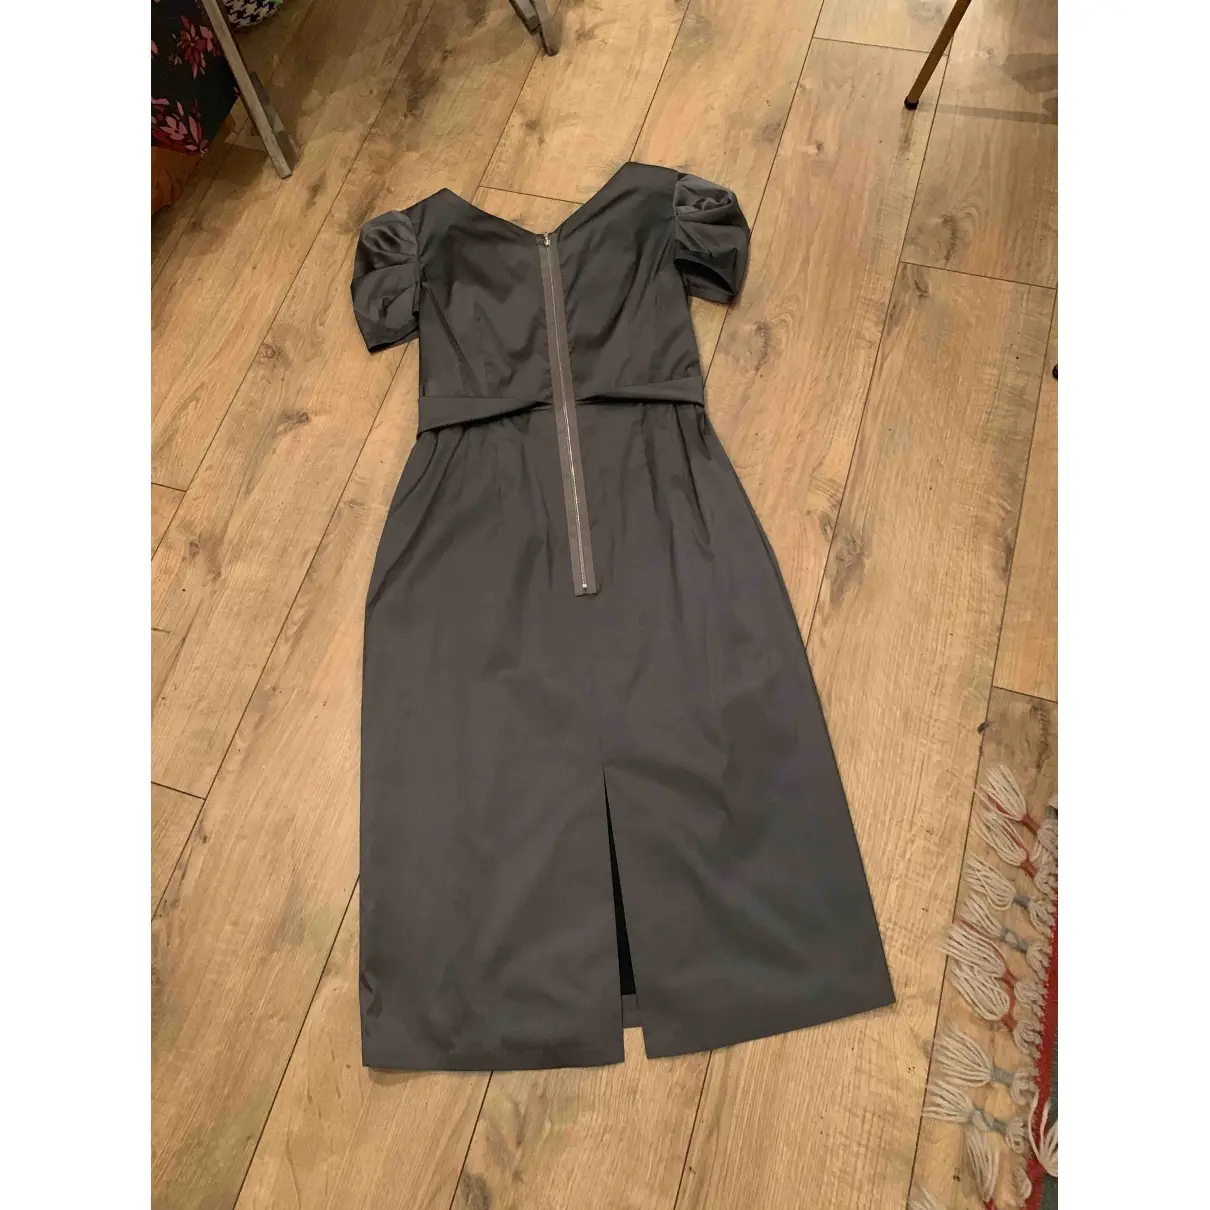 Talbot Runhof Silk mid-length dress for sale